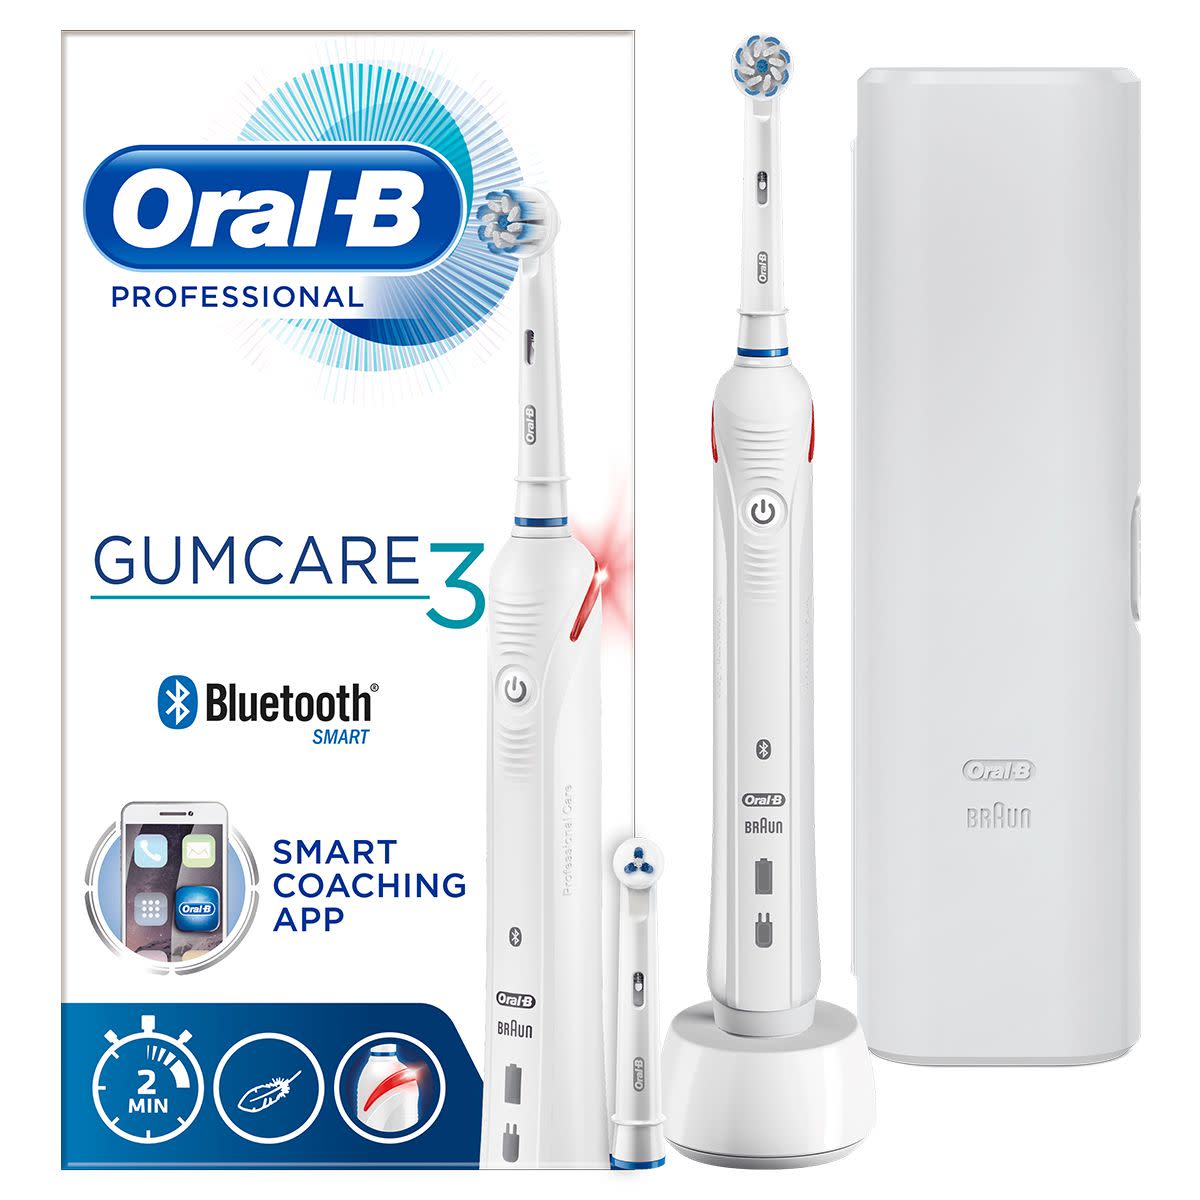 976289076 - Oral-B Professional Gumcare 3 Spazzolino Elettrico Per Denti Sensibili - 7893777_3.jpg